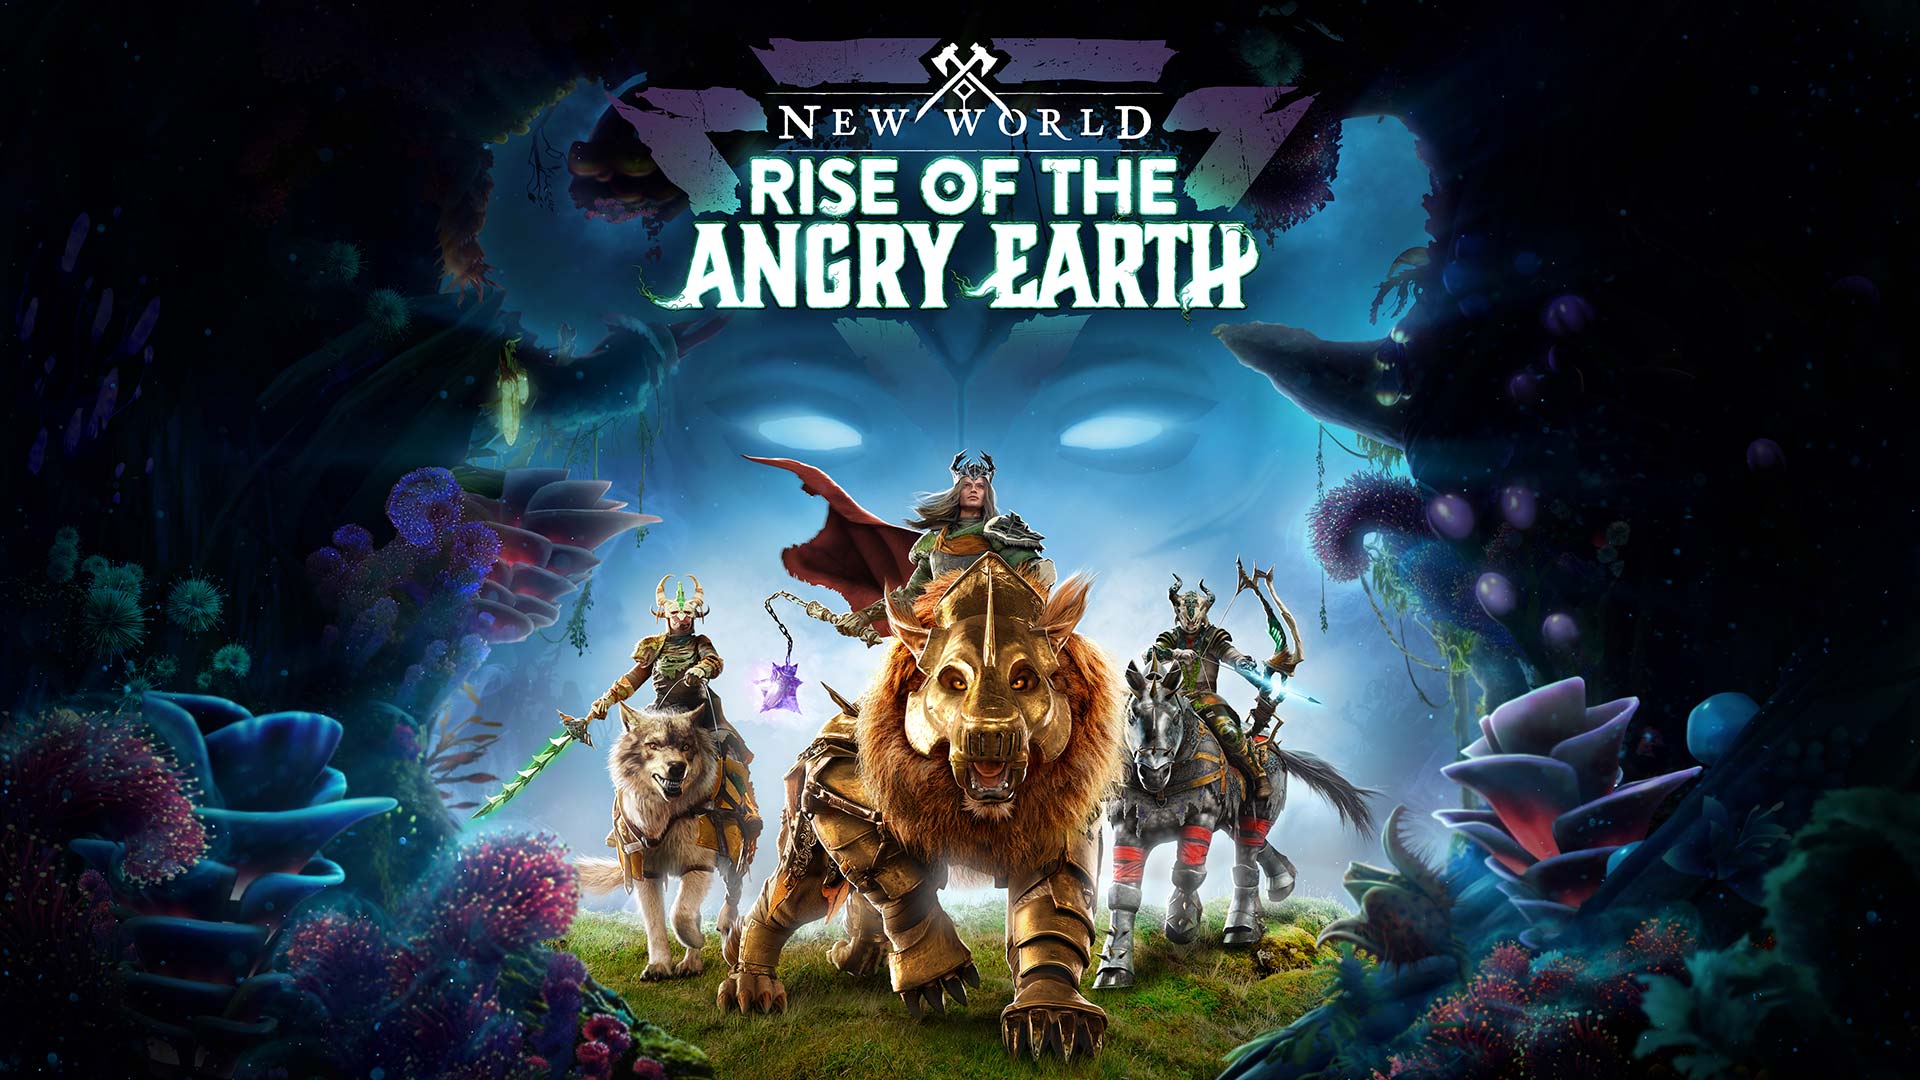 La prima espansione di New World - Rise of the Angry Earth - è disponibile da oggi